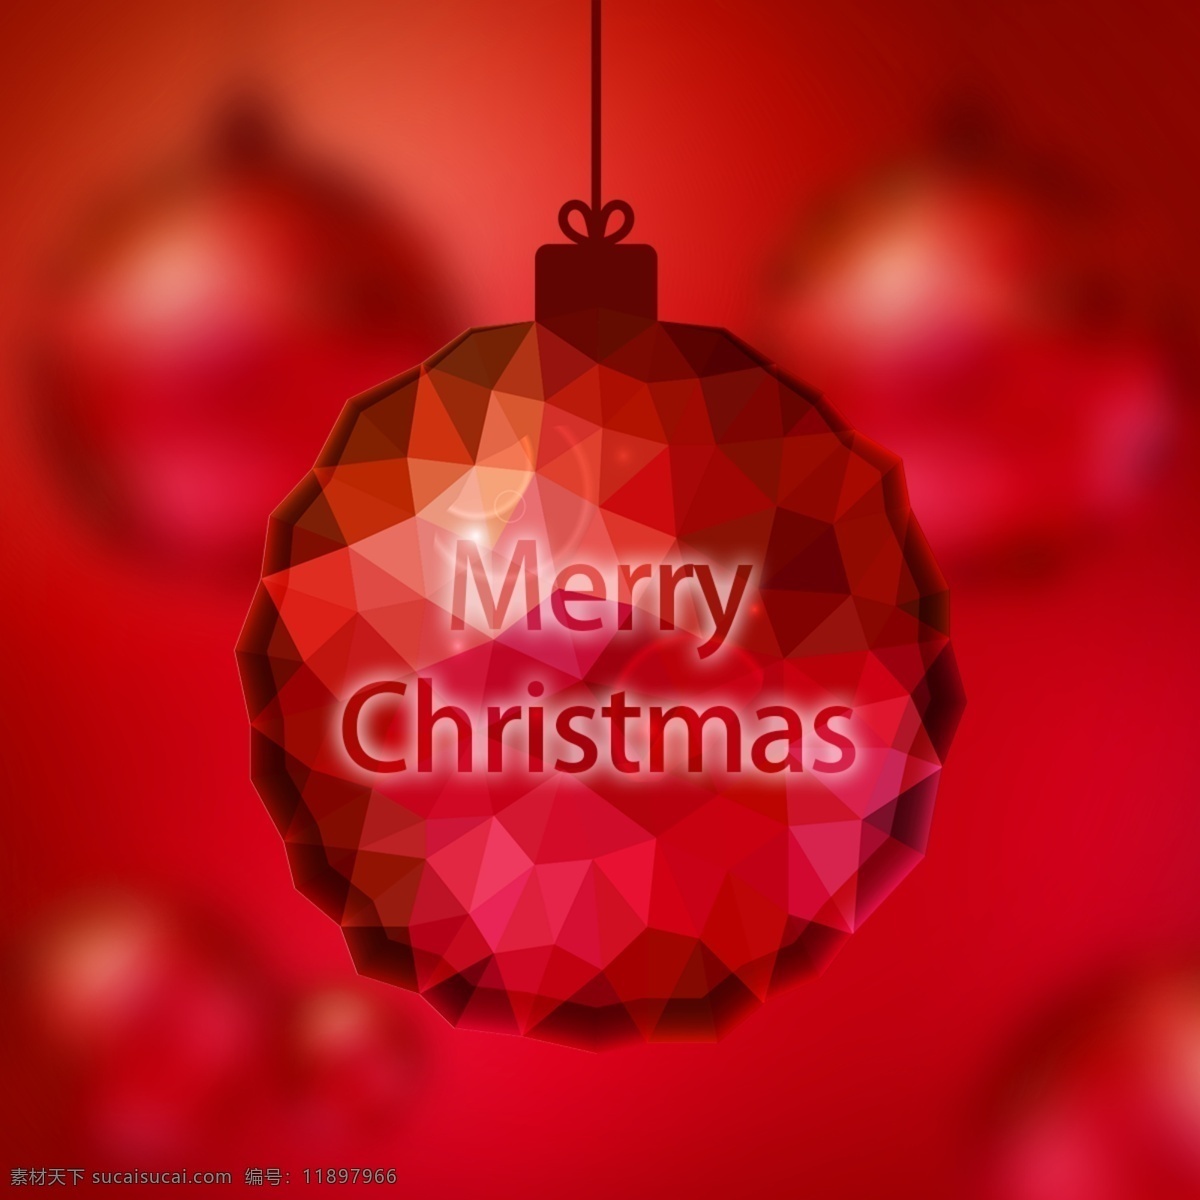 红色 圣诞球 装饰 丝绸 梦想 海报 背景 圣诞 复古 钟声 聪明 时尚